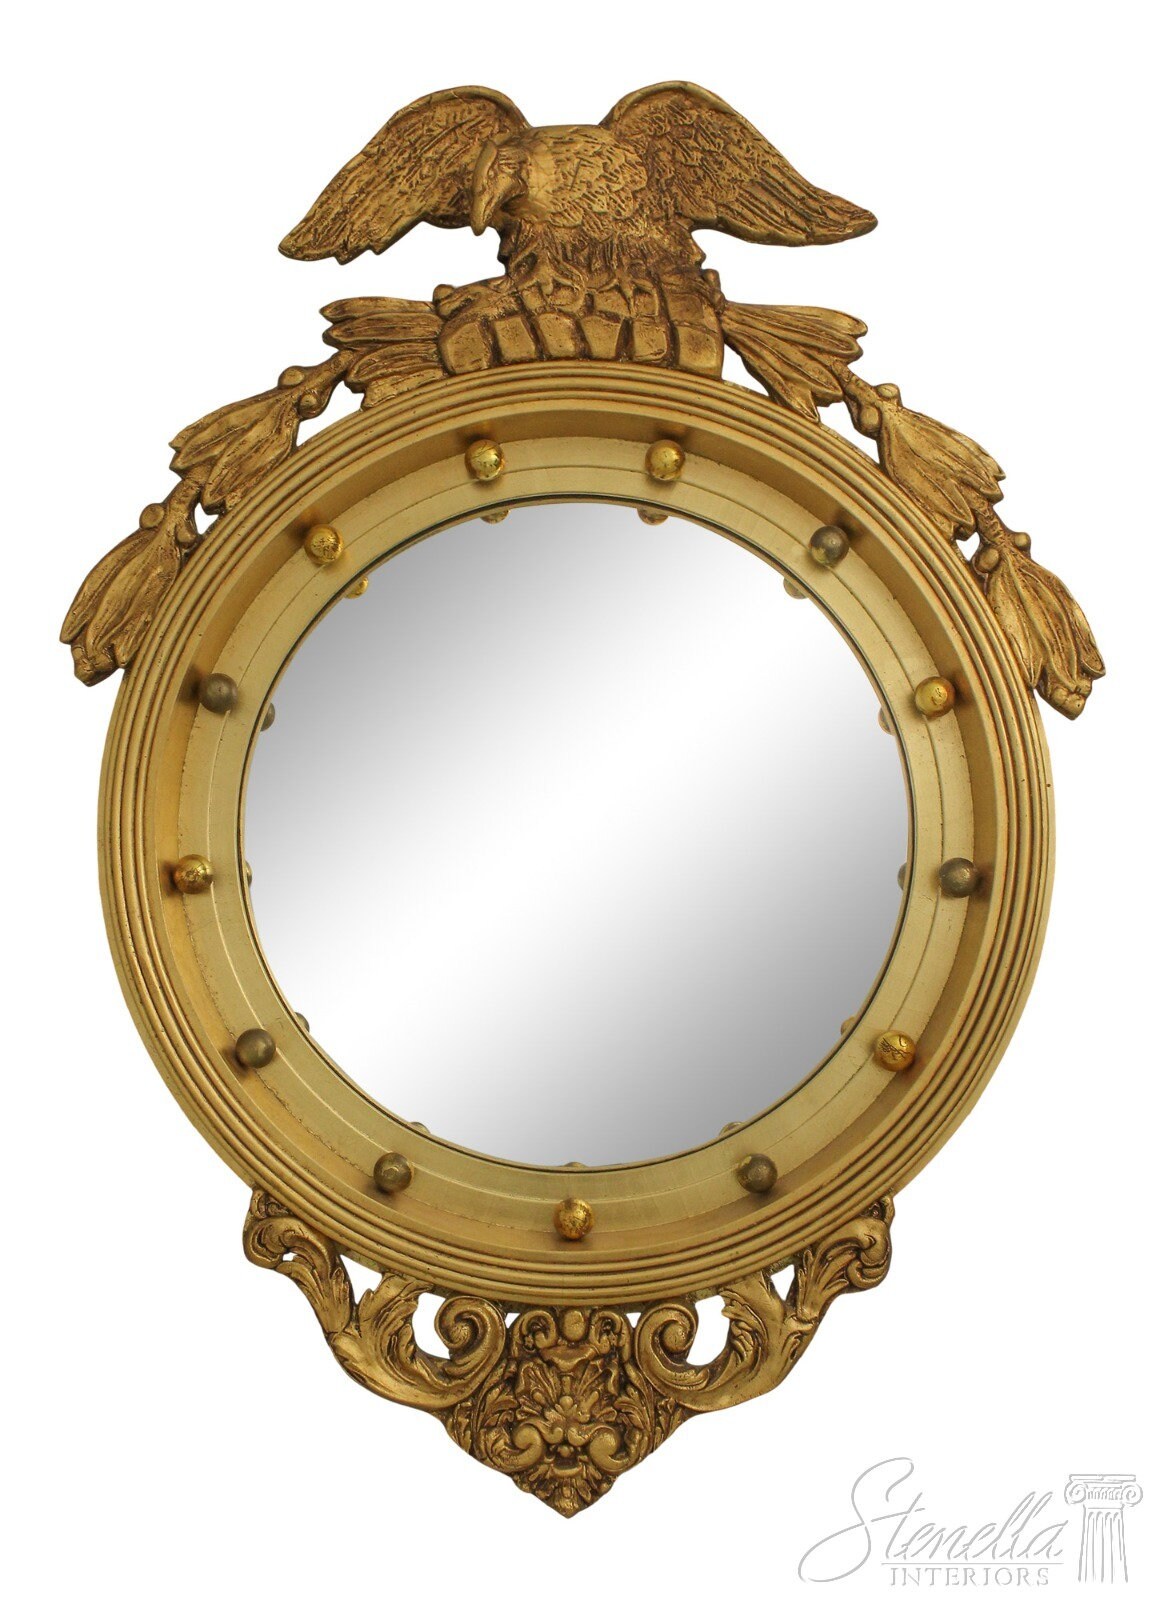 Convex Mirror Large Convex Mirrors Round Mirror Bathroom Mirror Wooden Mirror  Wall Mirror Big Mirror Round Convex Mirror 